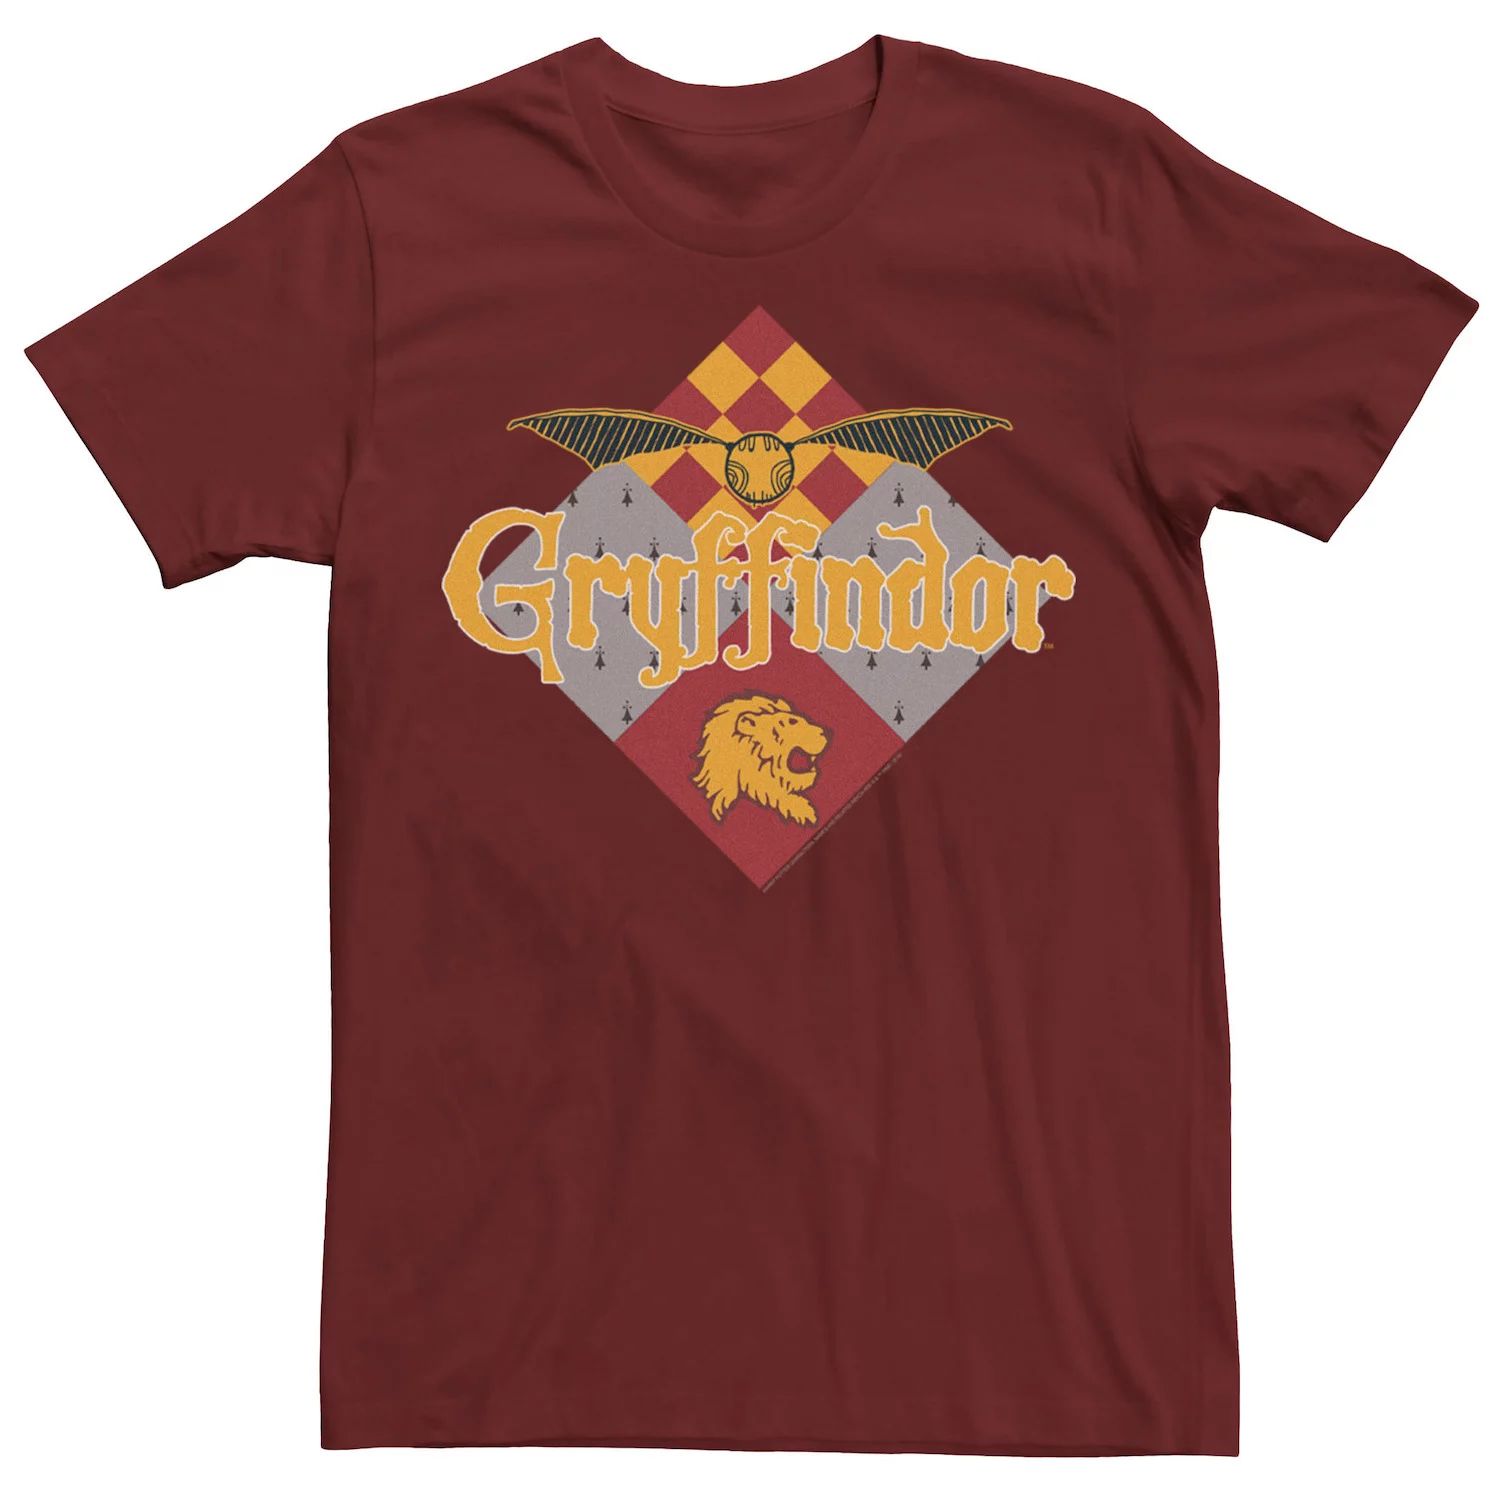 Мужская футболка с логотипом Gryffindor Golden Snitch Harry Potter светильник harry potter golden snitch